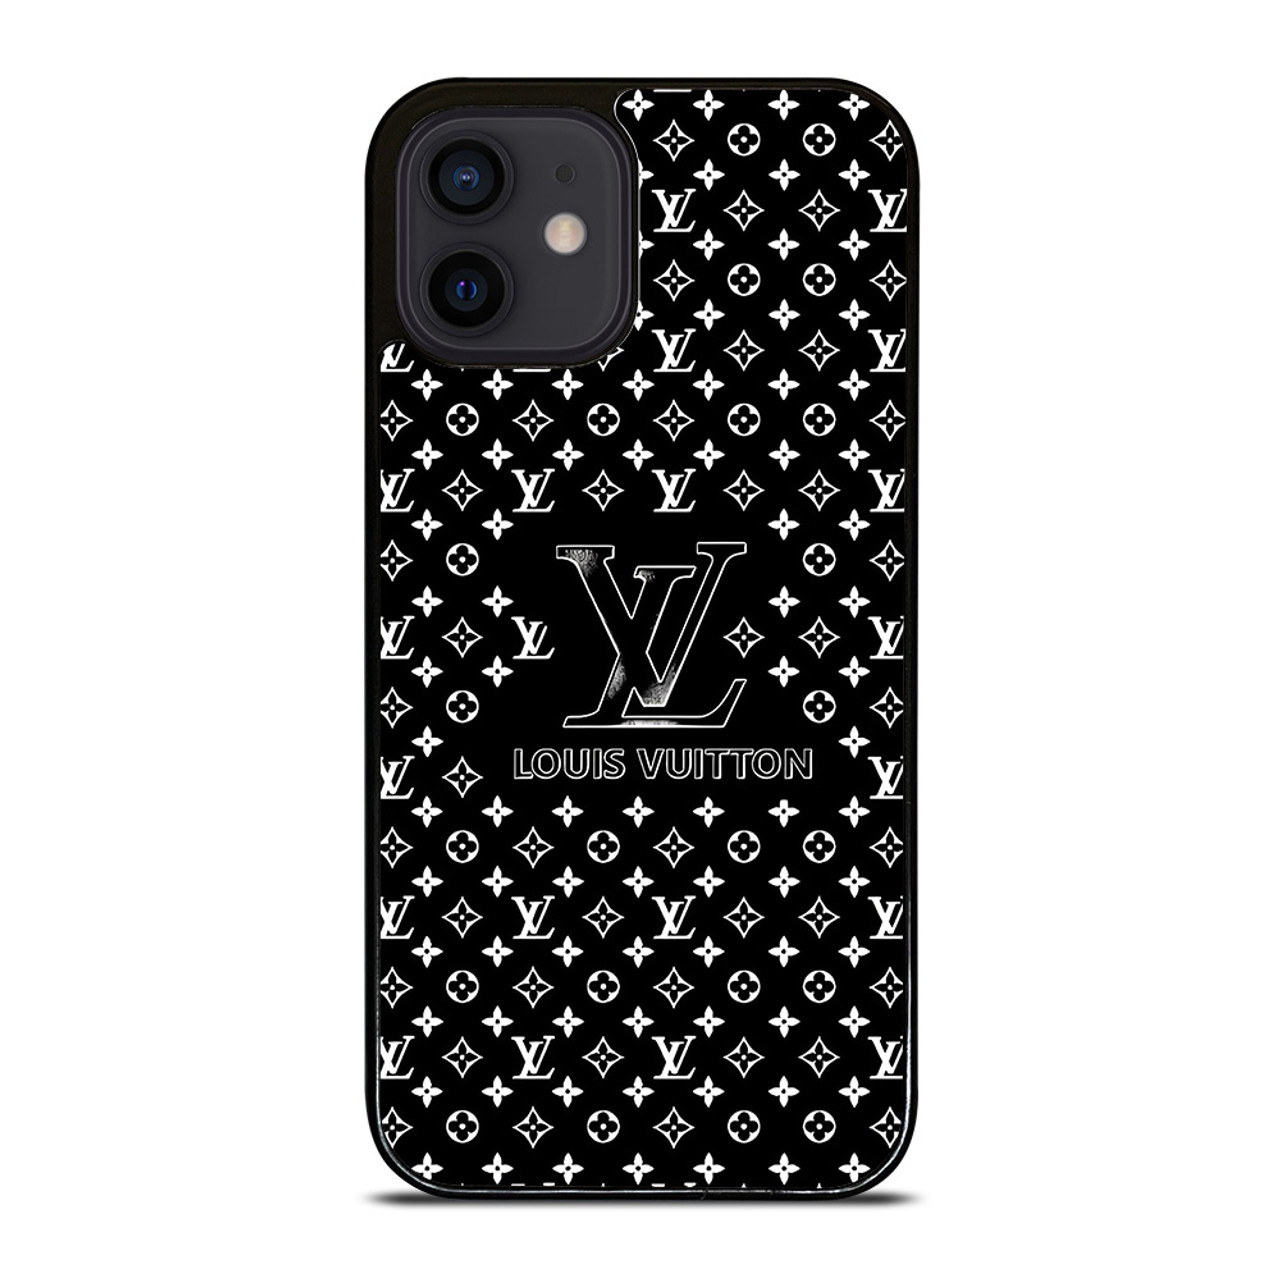 LOUIS VUITTON LV LOGO GRAY iPhone 12 Mini Case Cover